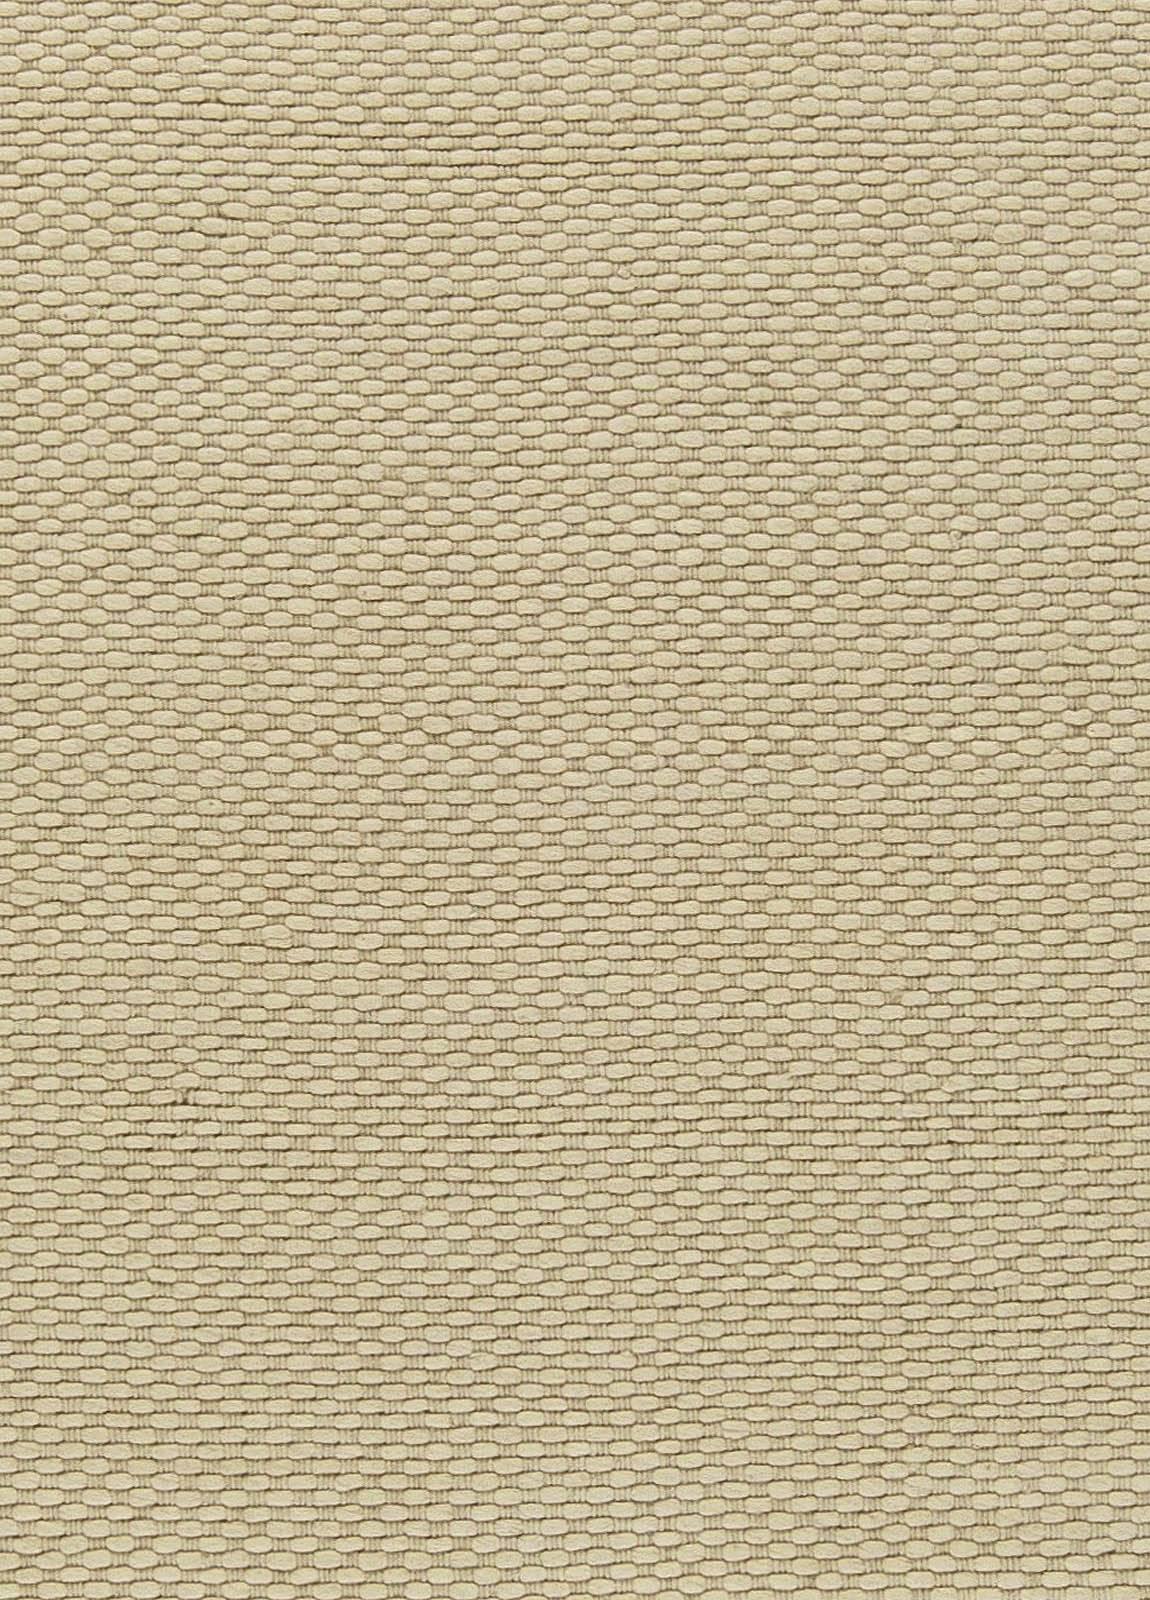 Contemporary beige flat-weave wool rug by Doris Leslie Blau
Size: 10'0